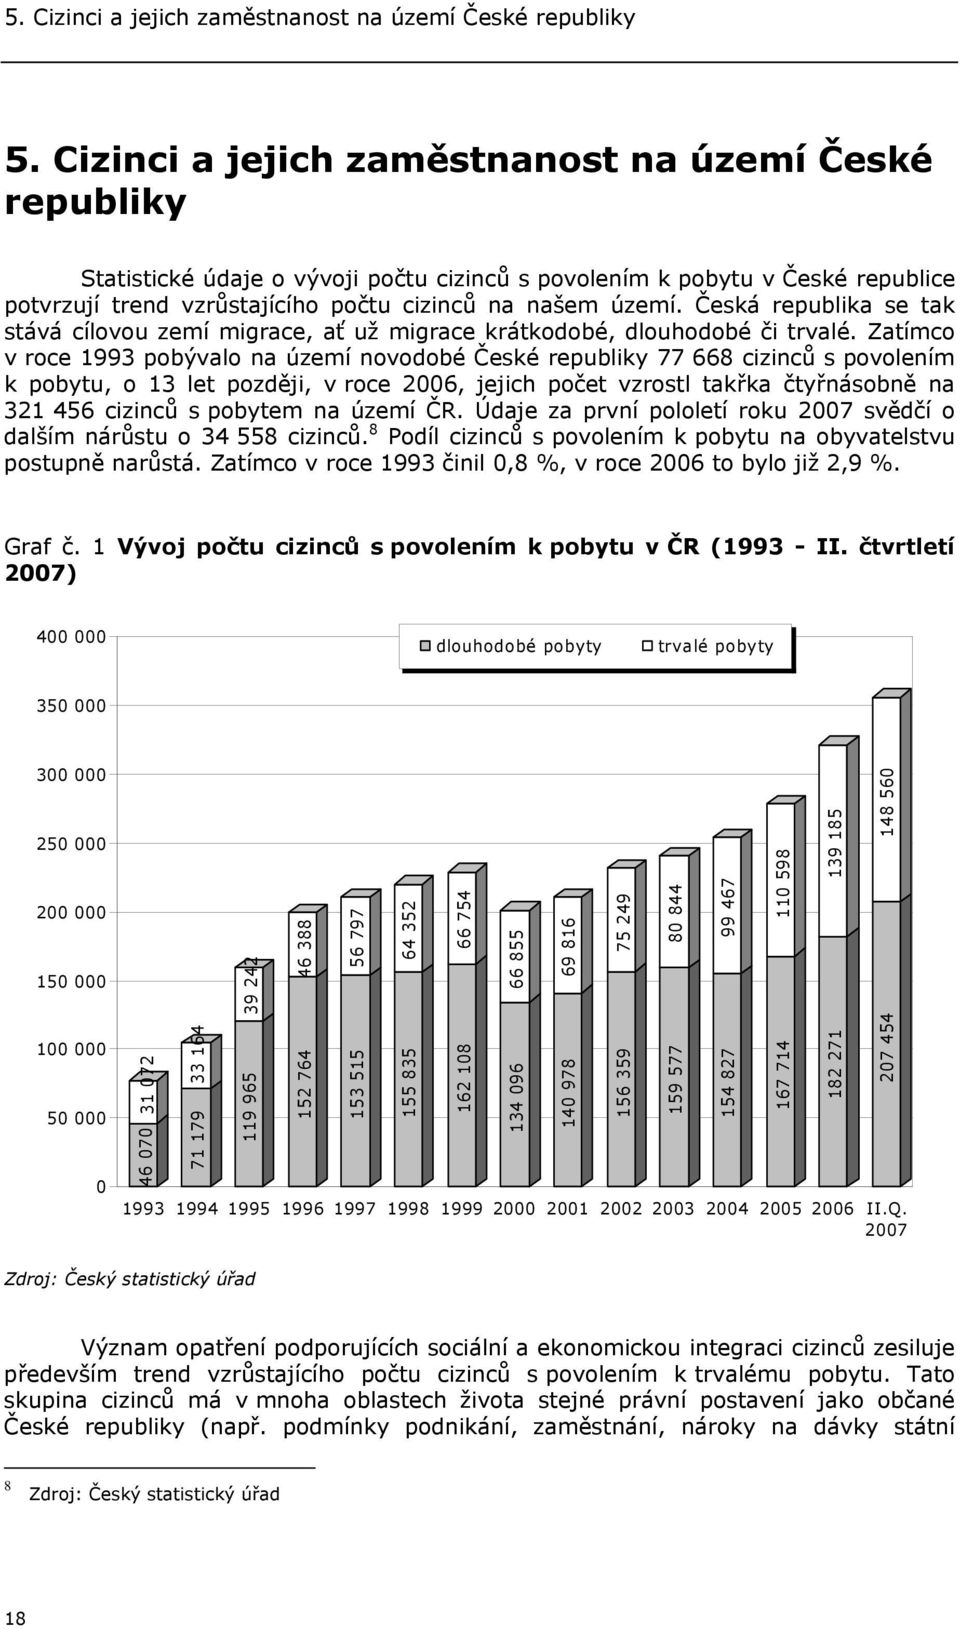 Zatímco v roce 1993 pobývalo na území novodobé České republiky 77 668 cizinců s povolením k pobytu, o 13 let později, v roce 2006, jejich počet vzrostl takřka čtyřnásobně na 321 456 cizinců s pobytem